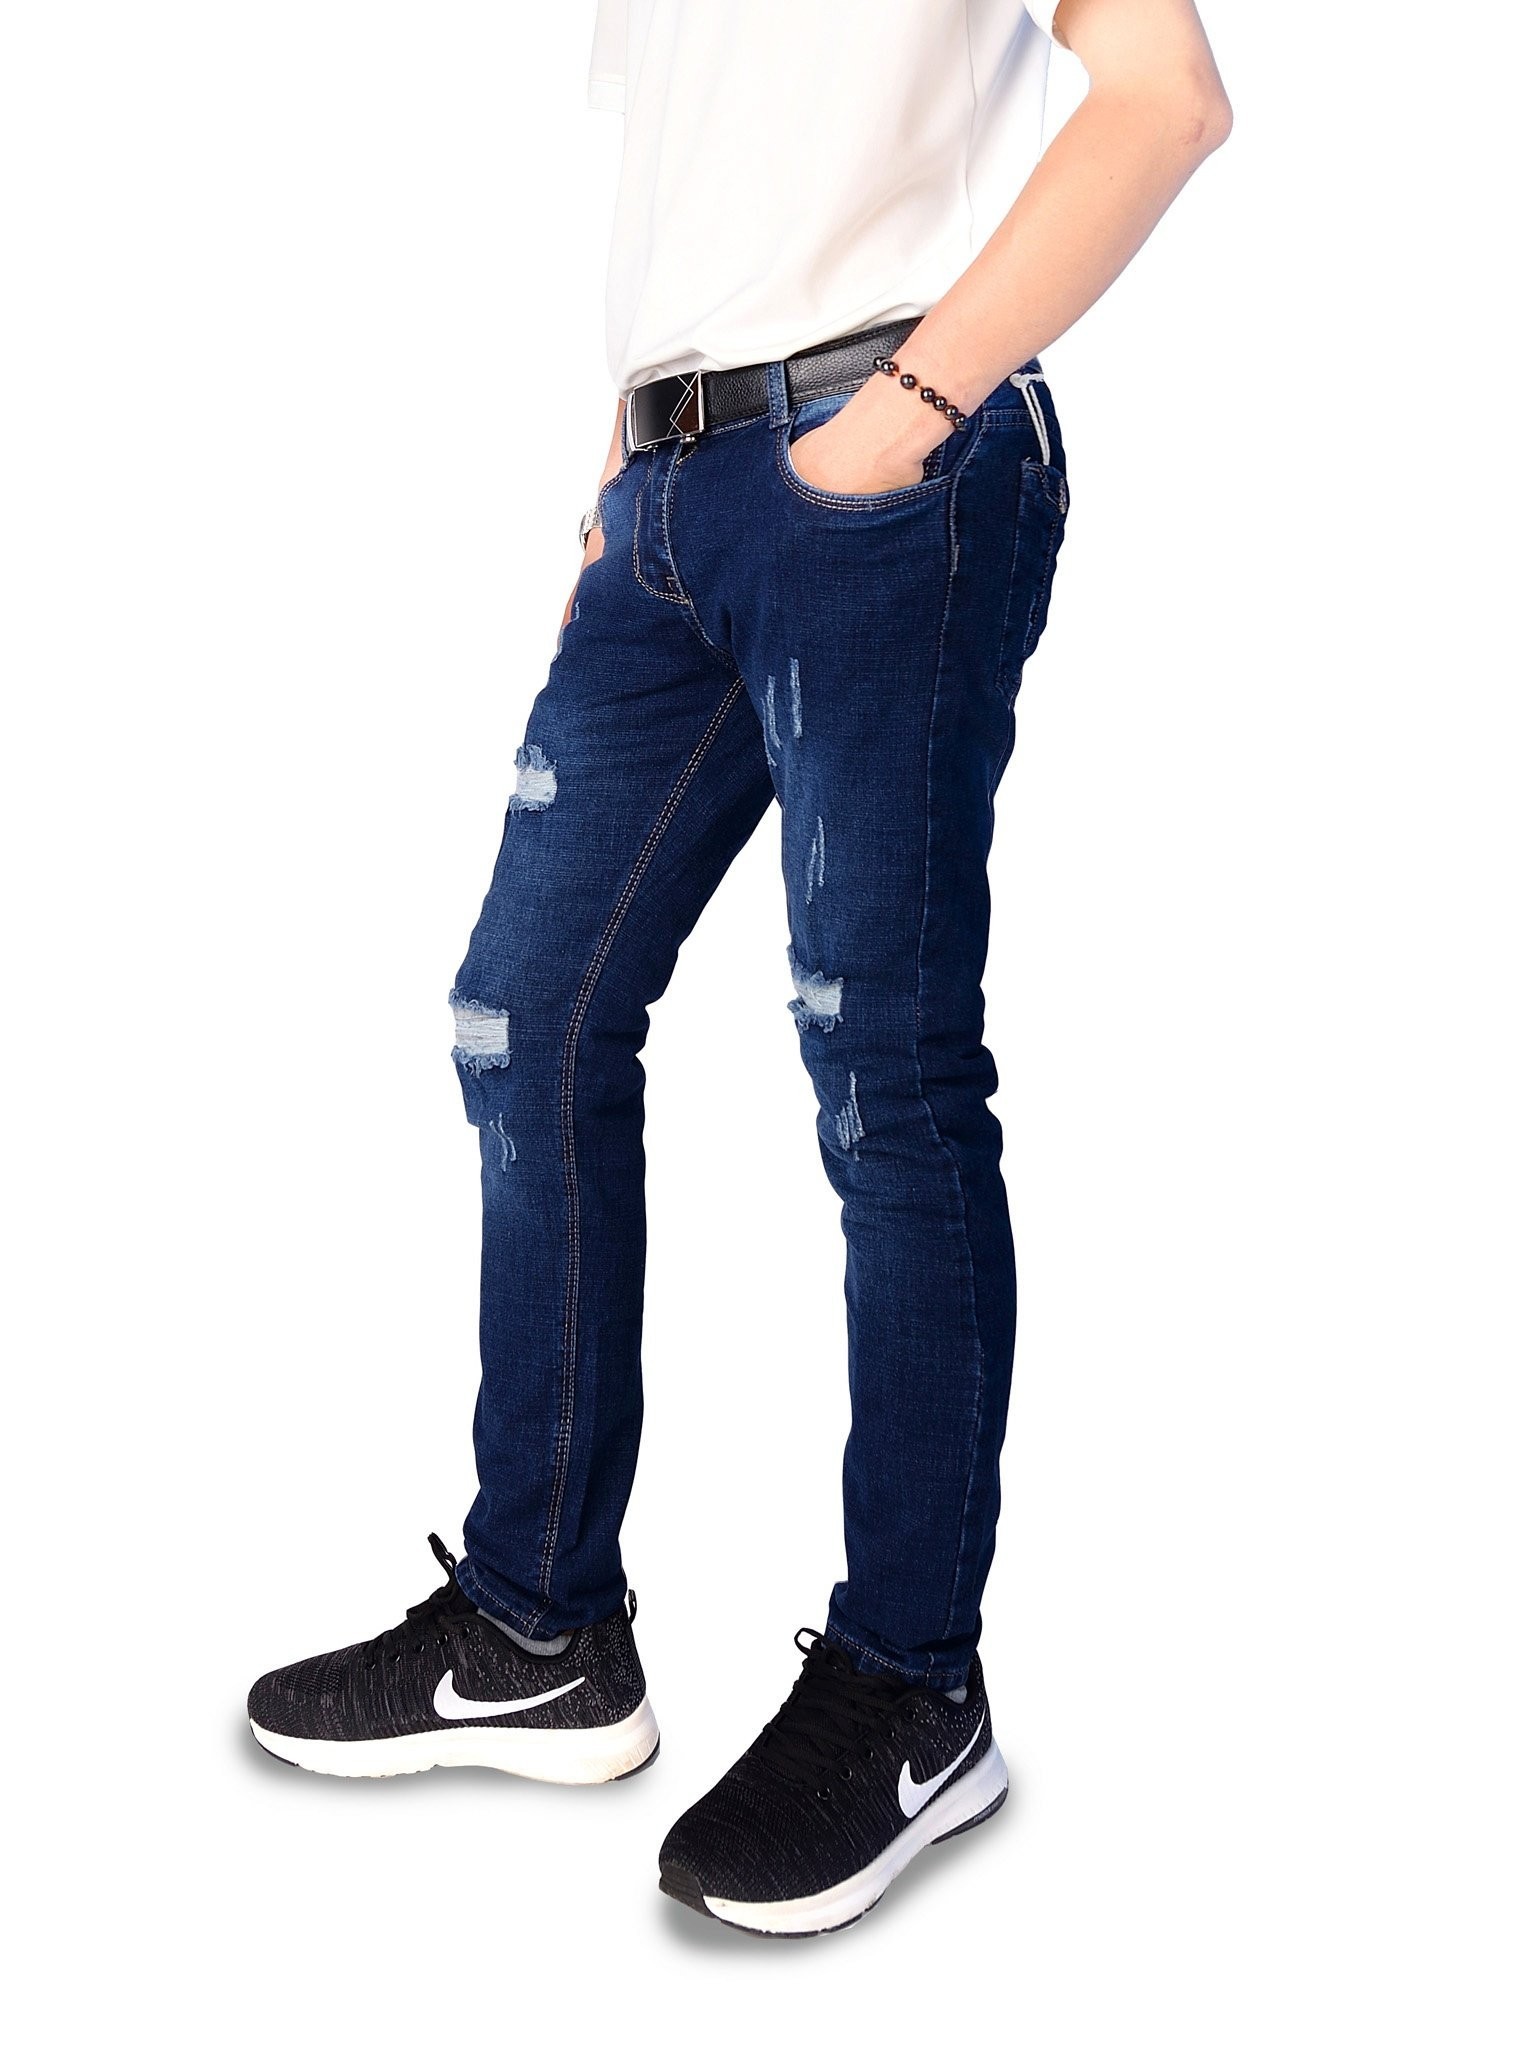 Phối đồ với jeans nam rách gối tạo phong cách mới